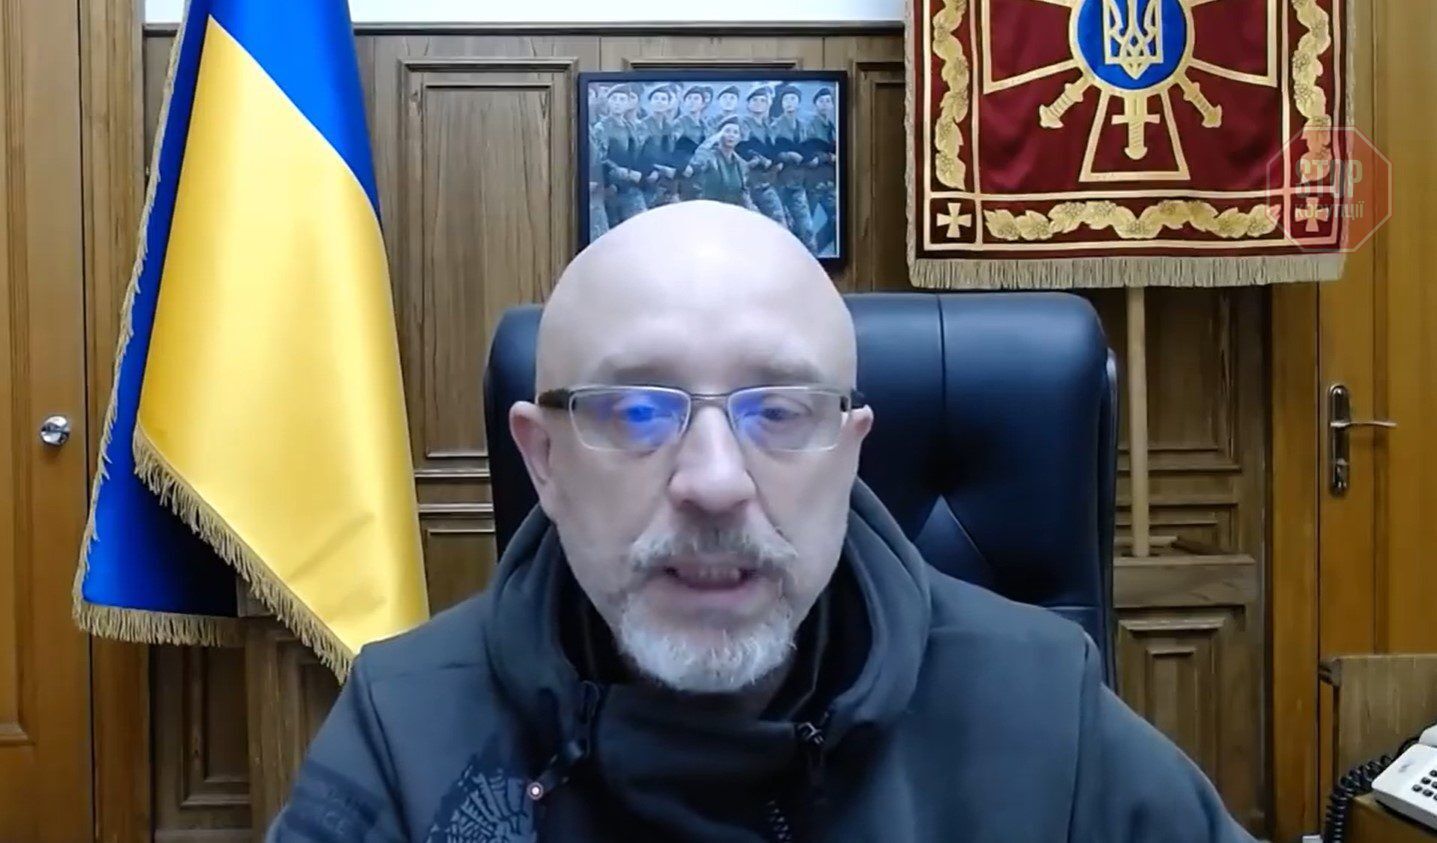  Олексій Резніков пояснив, як українцям перемогти у війні. Фото: скрін відео Facebook